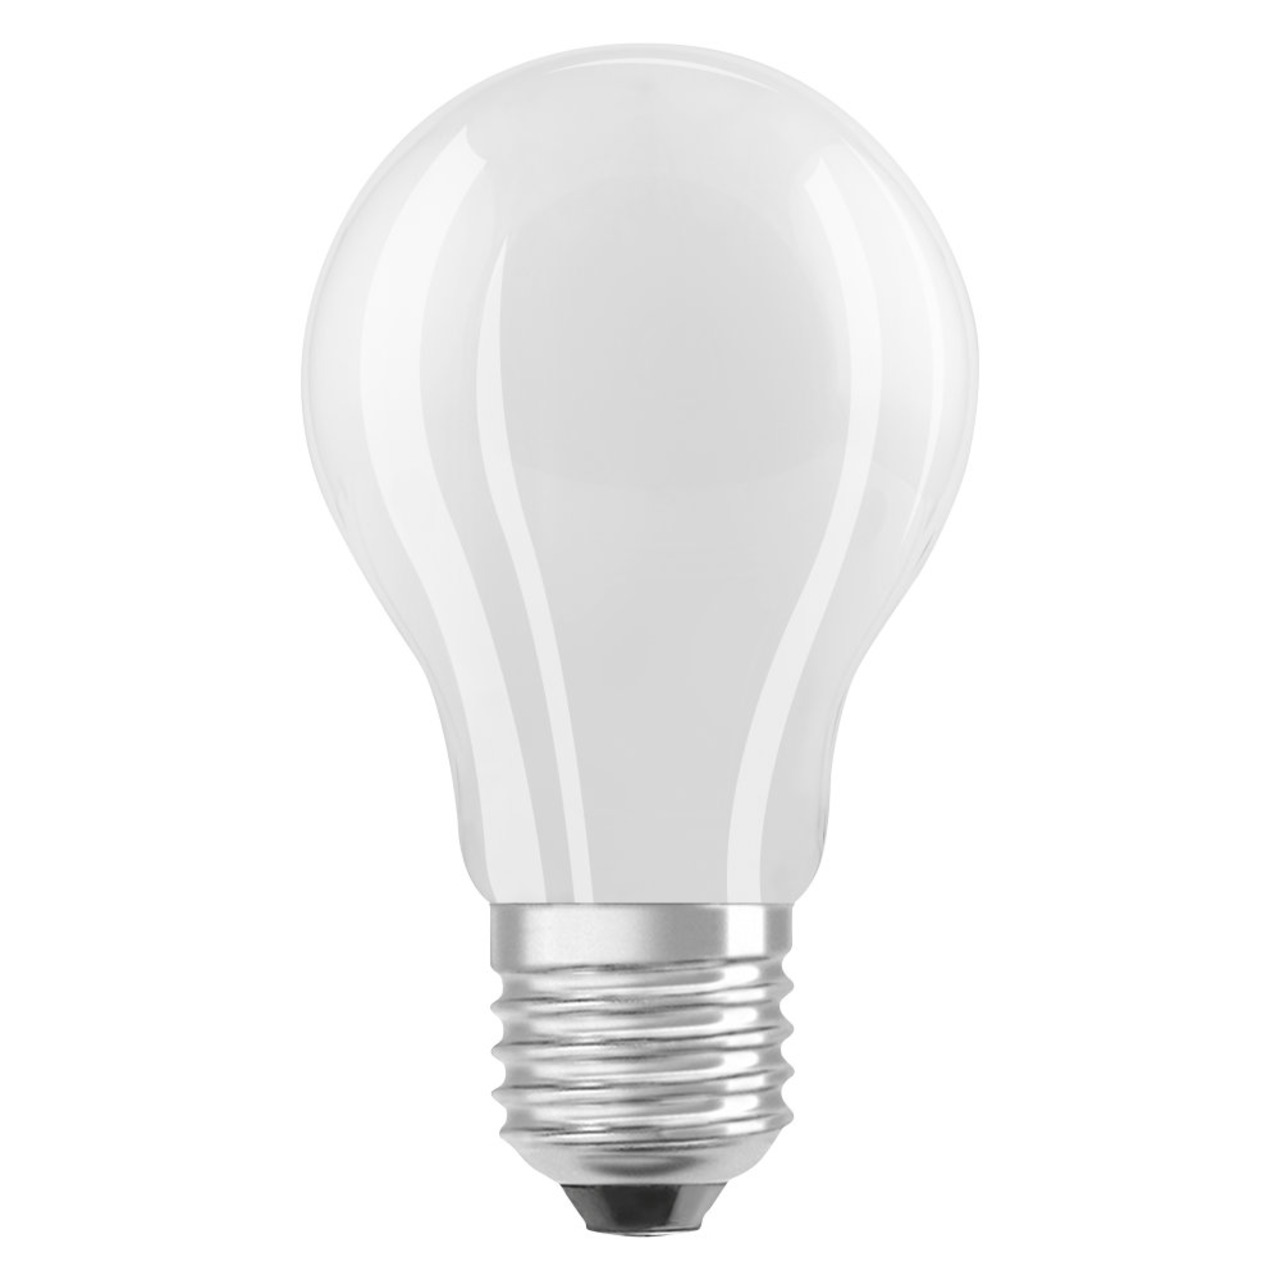 OSRAM LED Superstar 11-W-Filament-LED-Lampe E27- warmweiss- matt- dimmbar- 1521 lm unter Beleuchtung